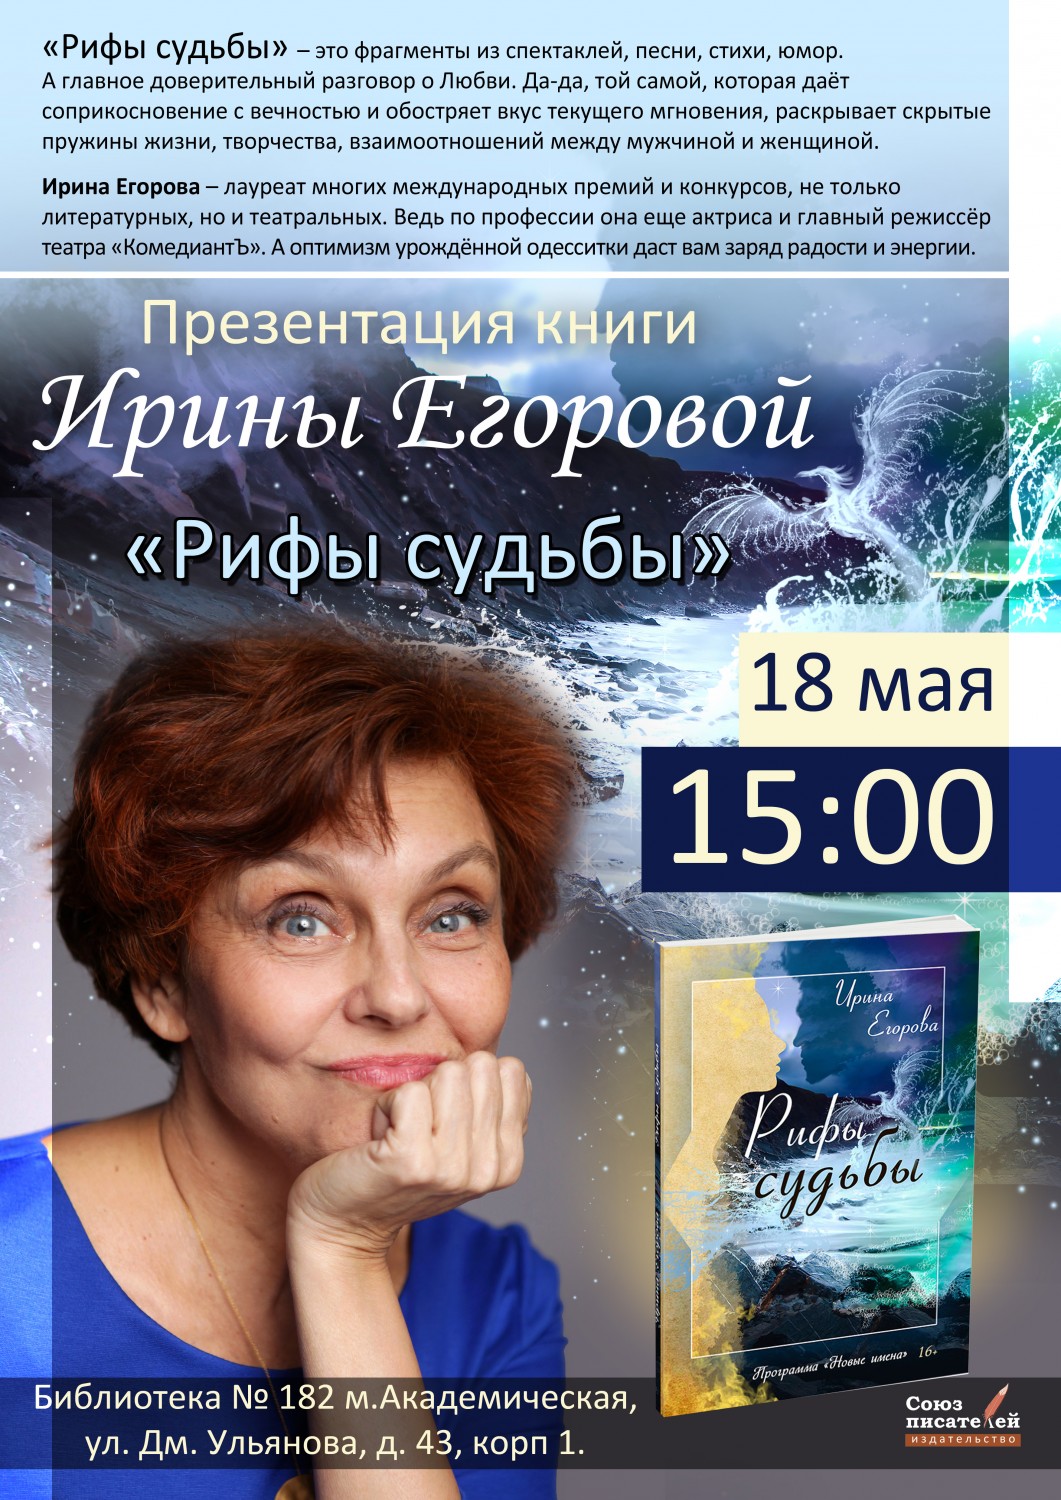 Презентация книги Ирины Егоровой 